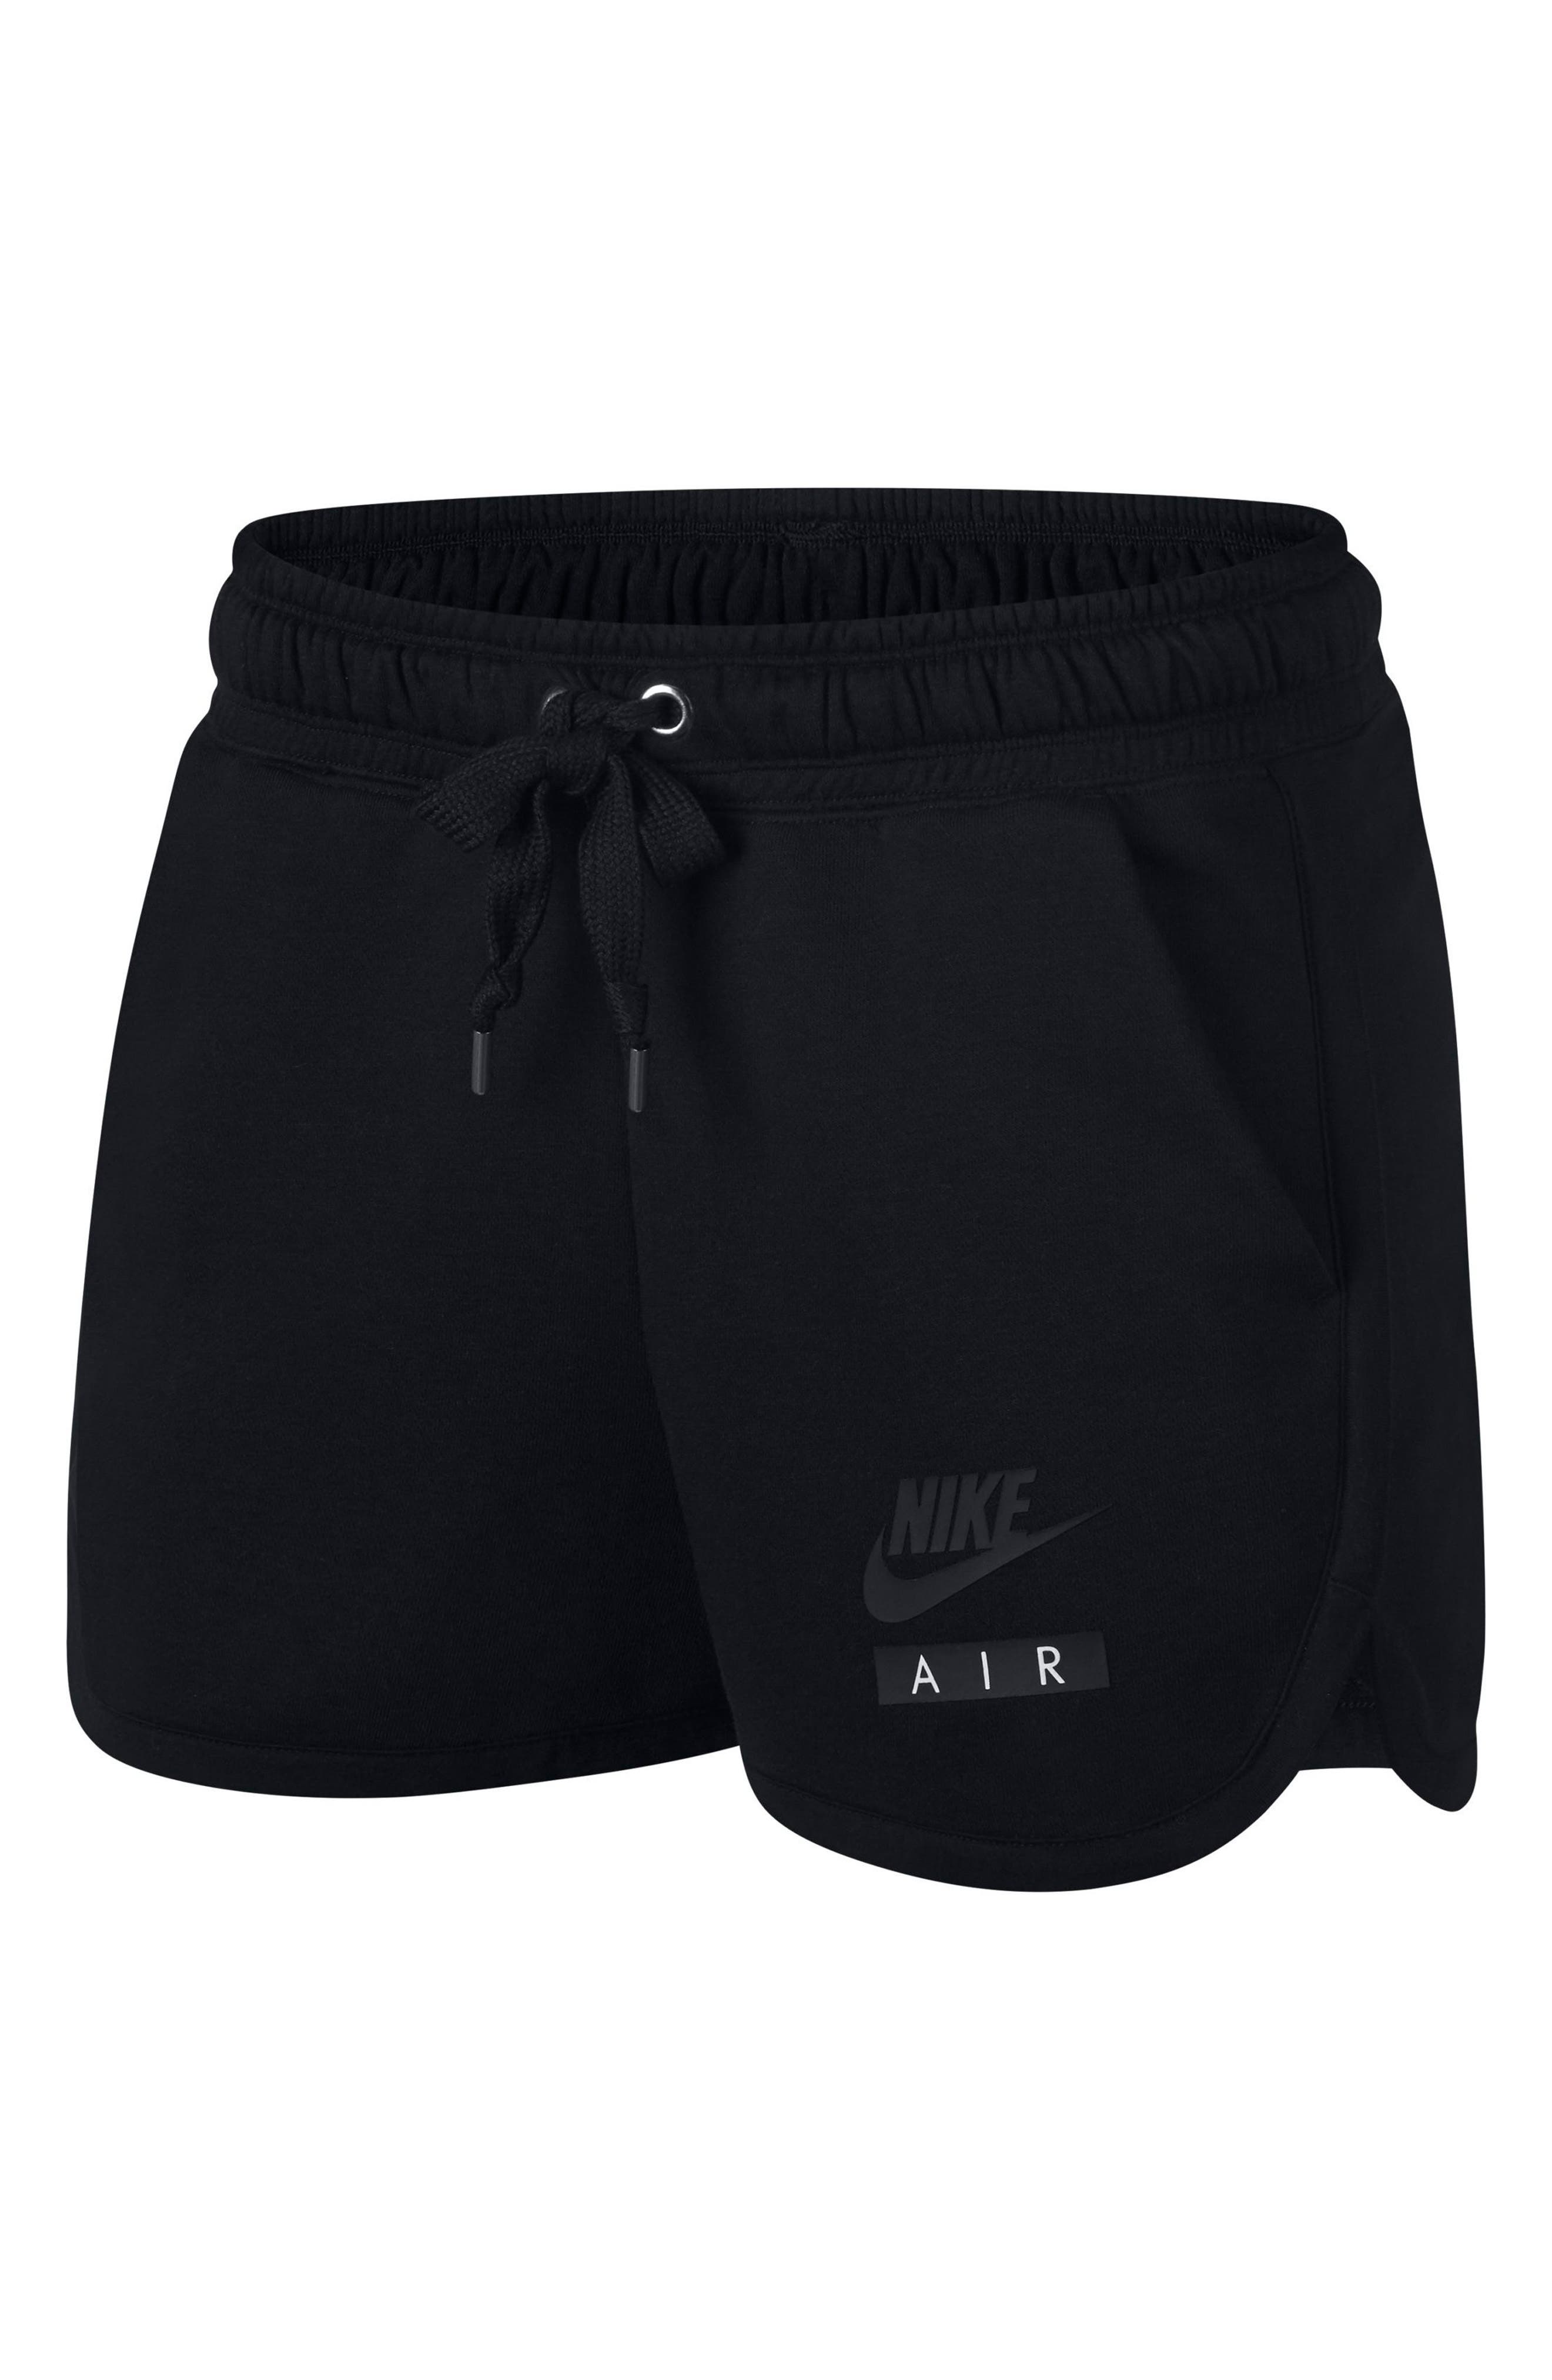 air nike shorts